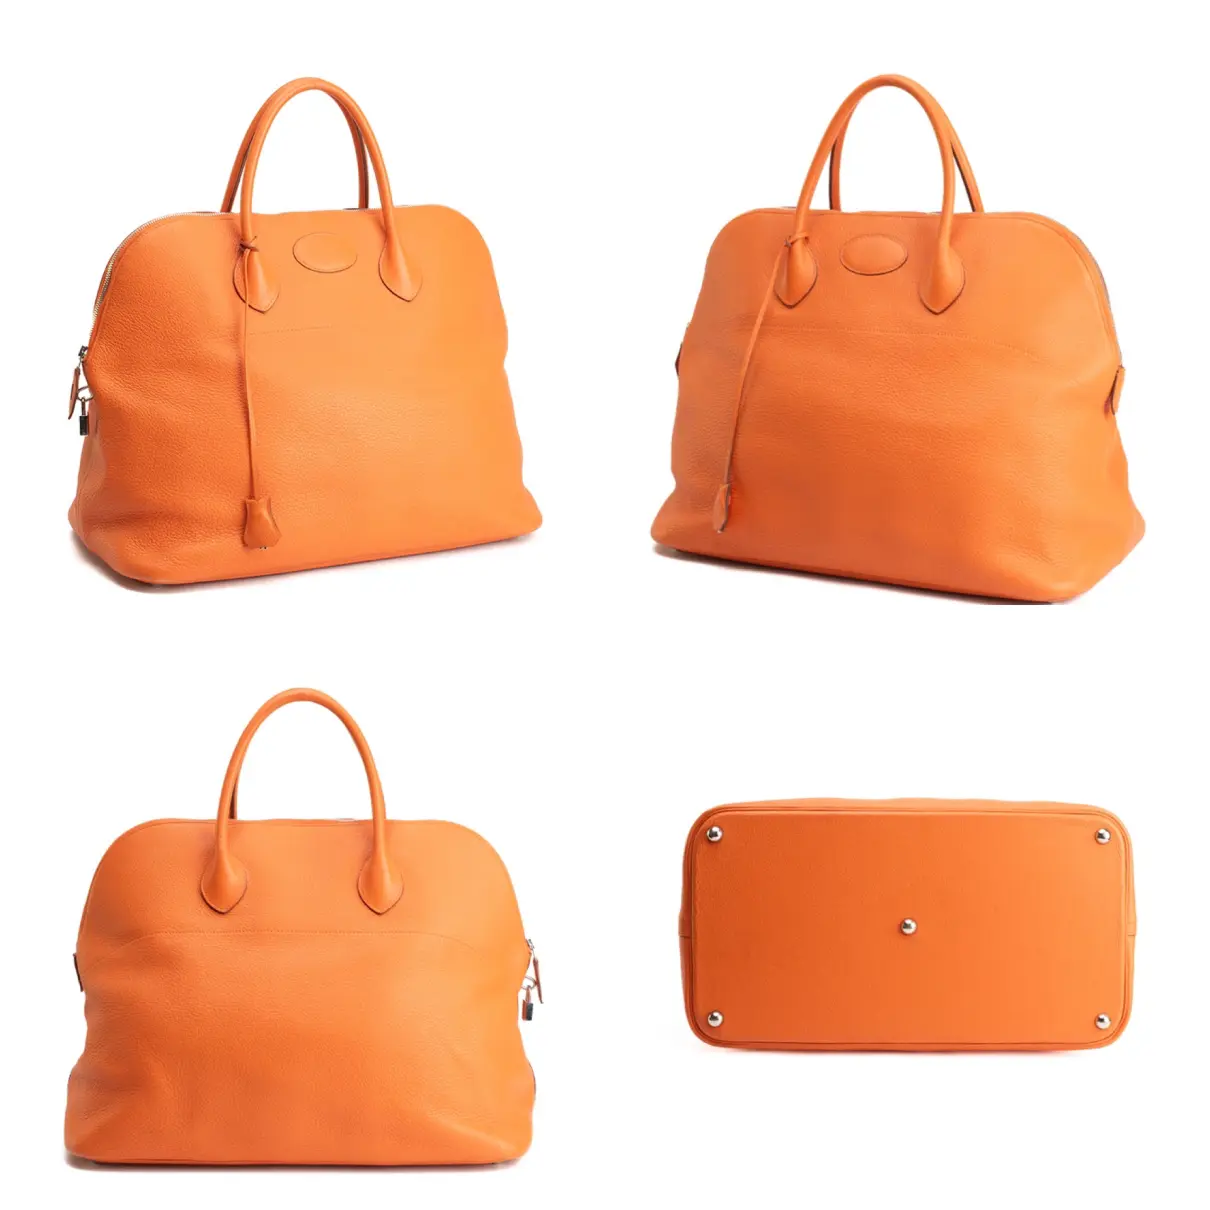 Buy Hermès Bolide leather bag online - Vintage